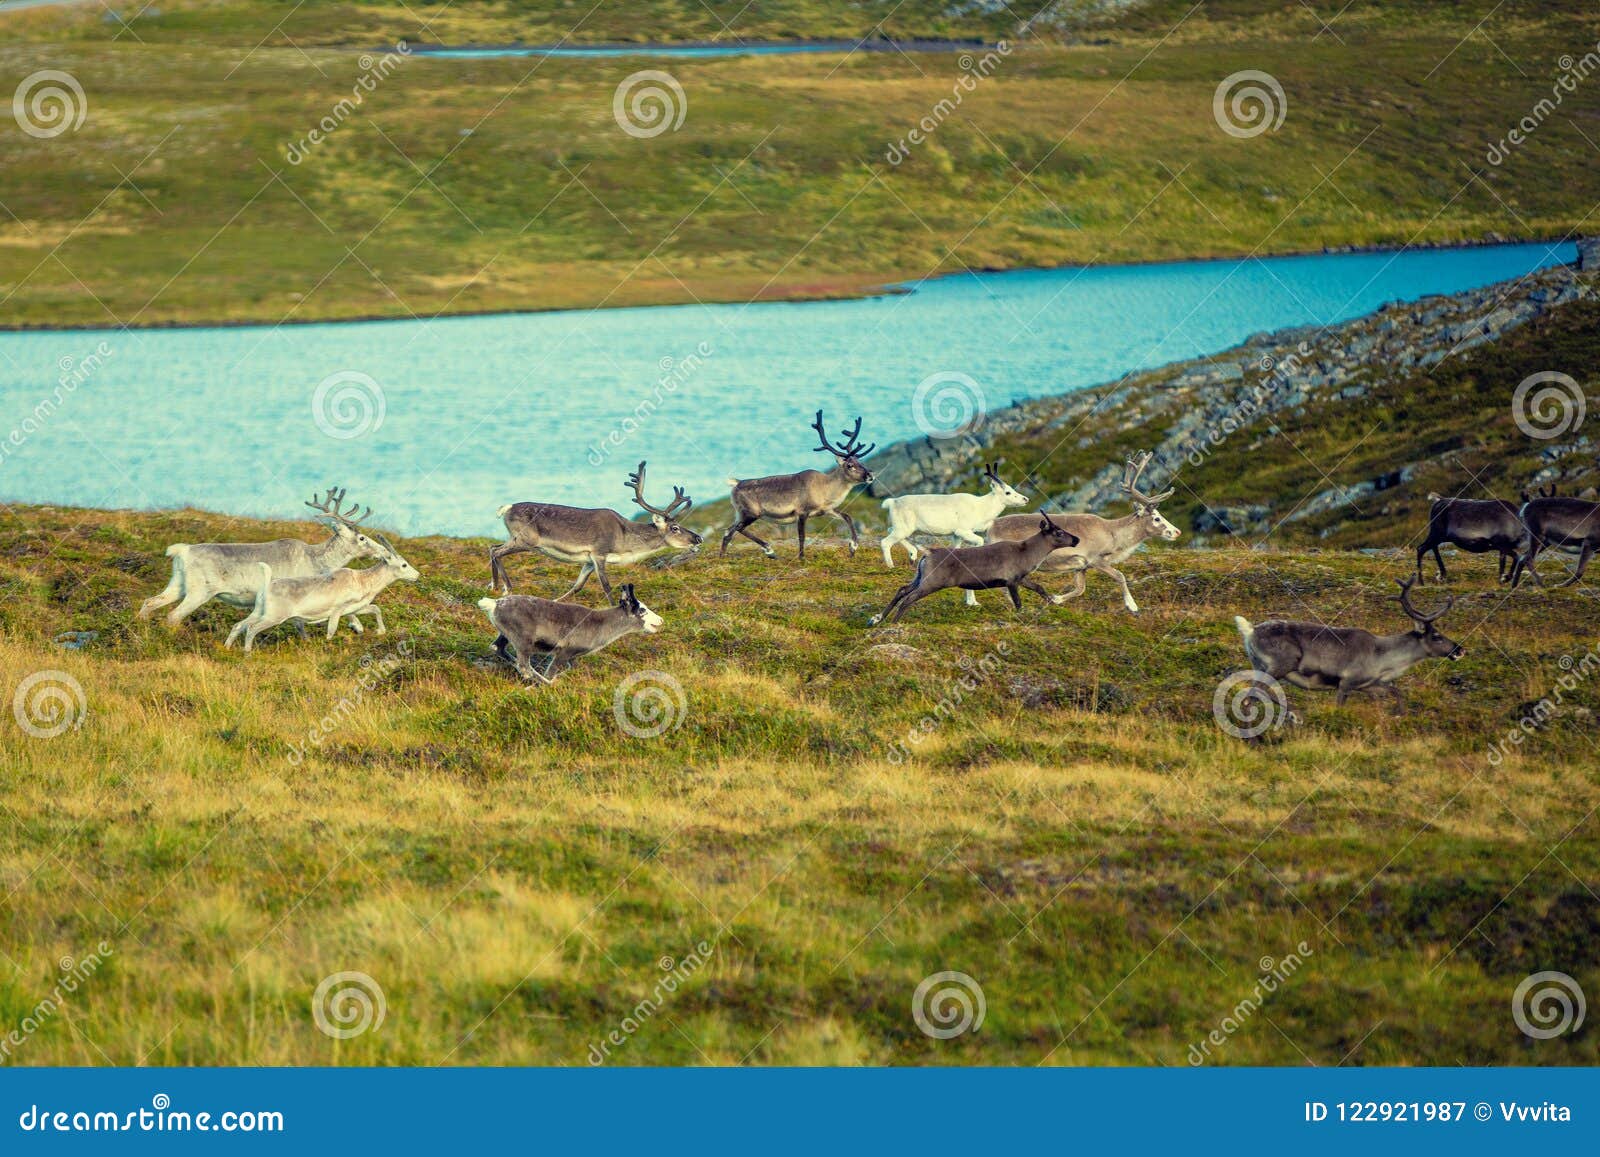 a herd of deer runs along the tundra